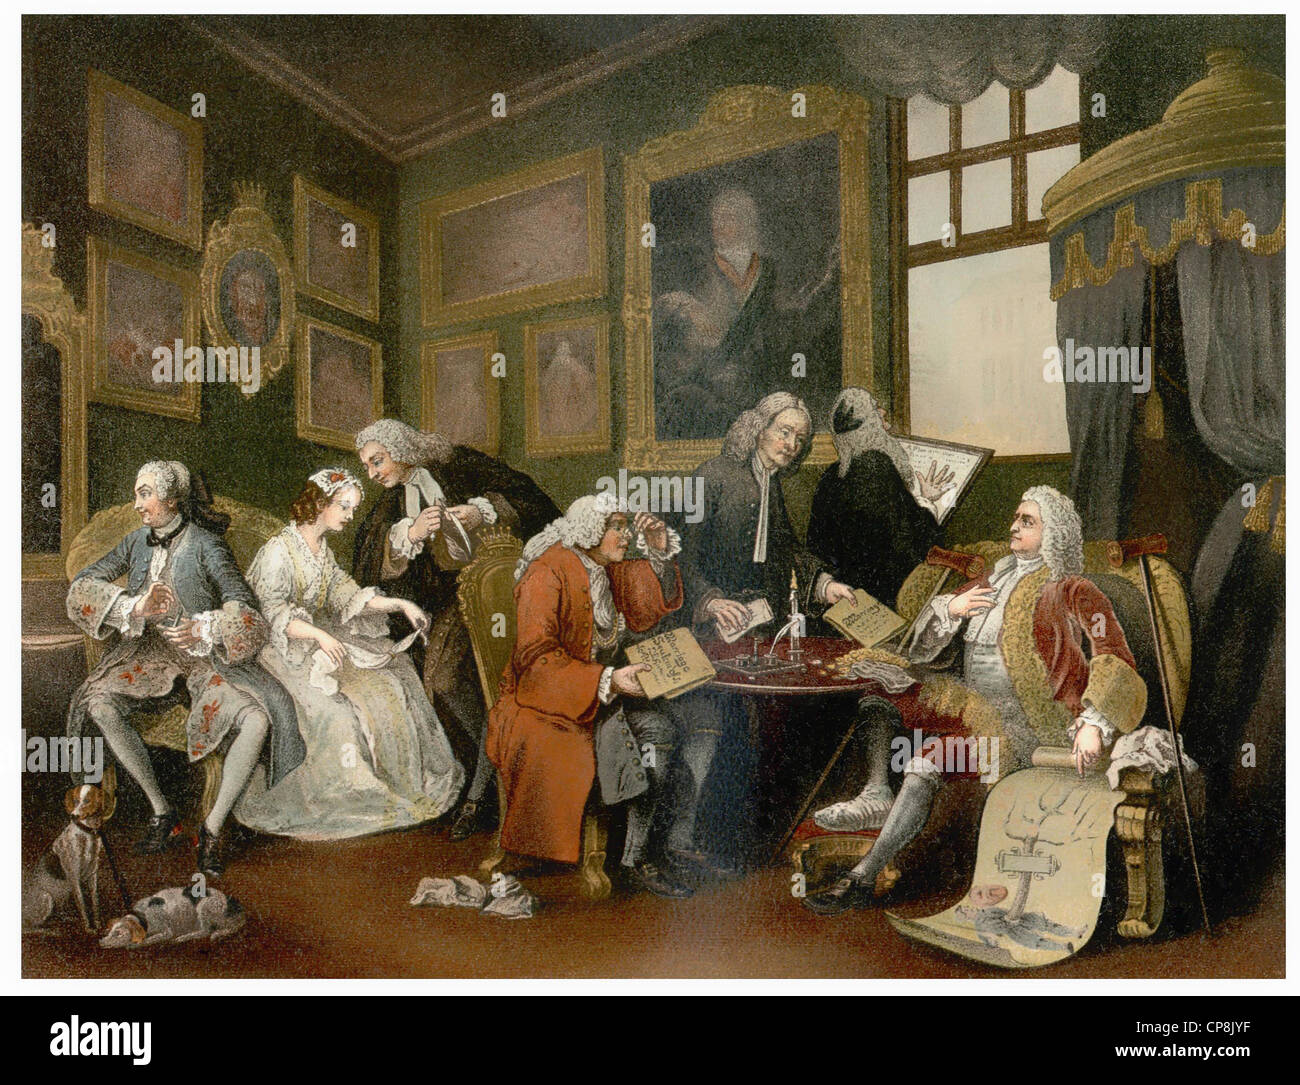 Illustration historique après le contrat de mariage, 1743, par William Hogarth, 1697 - 1764, un peintre anglais de critique sociale Banque D'Images